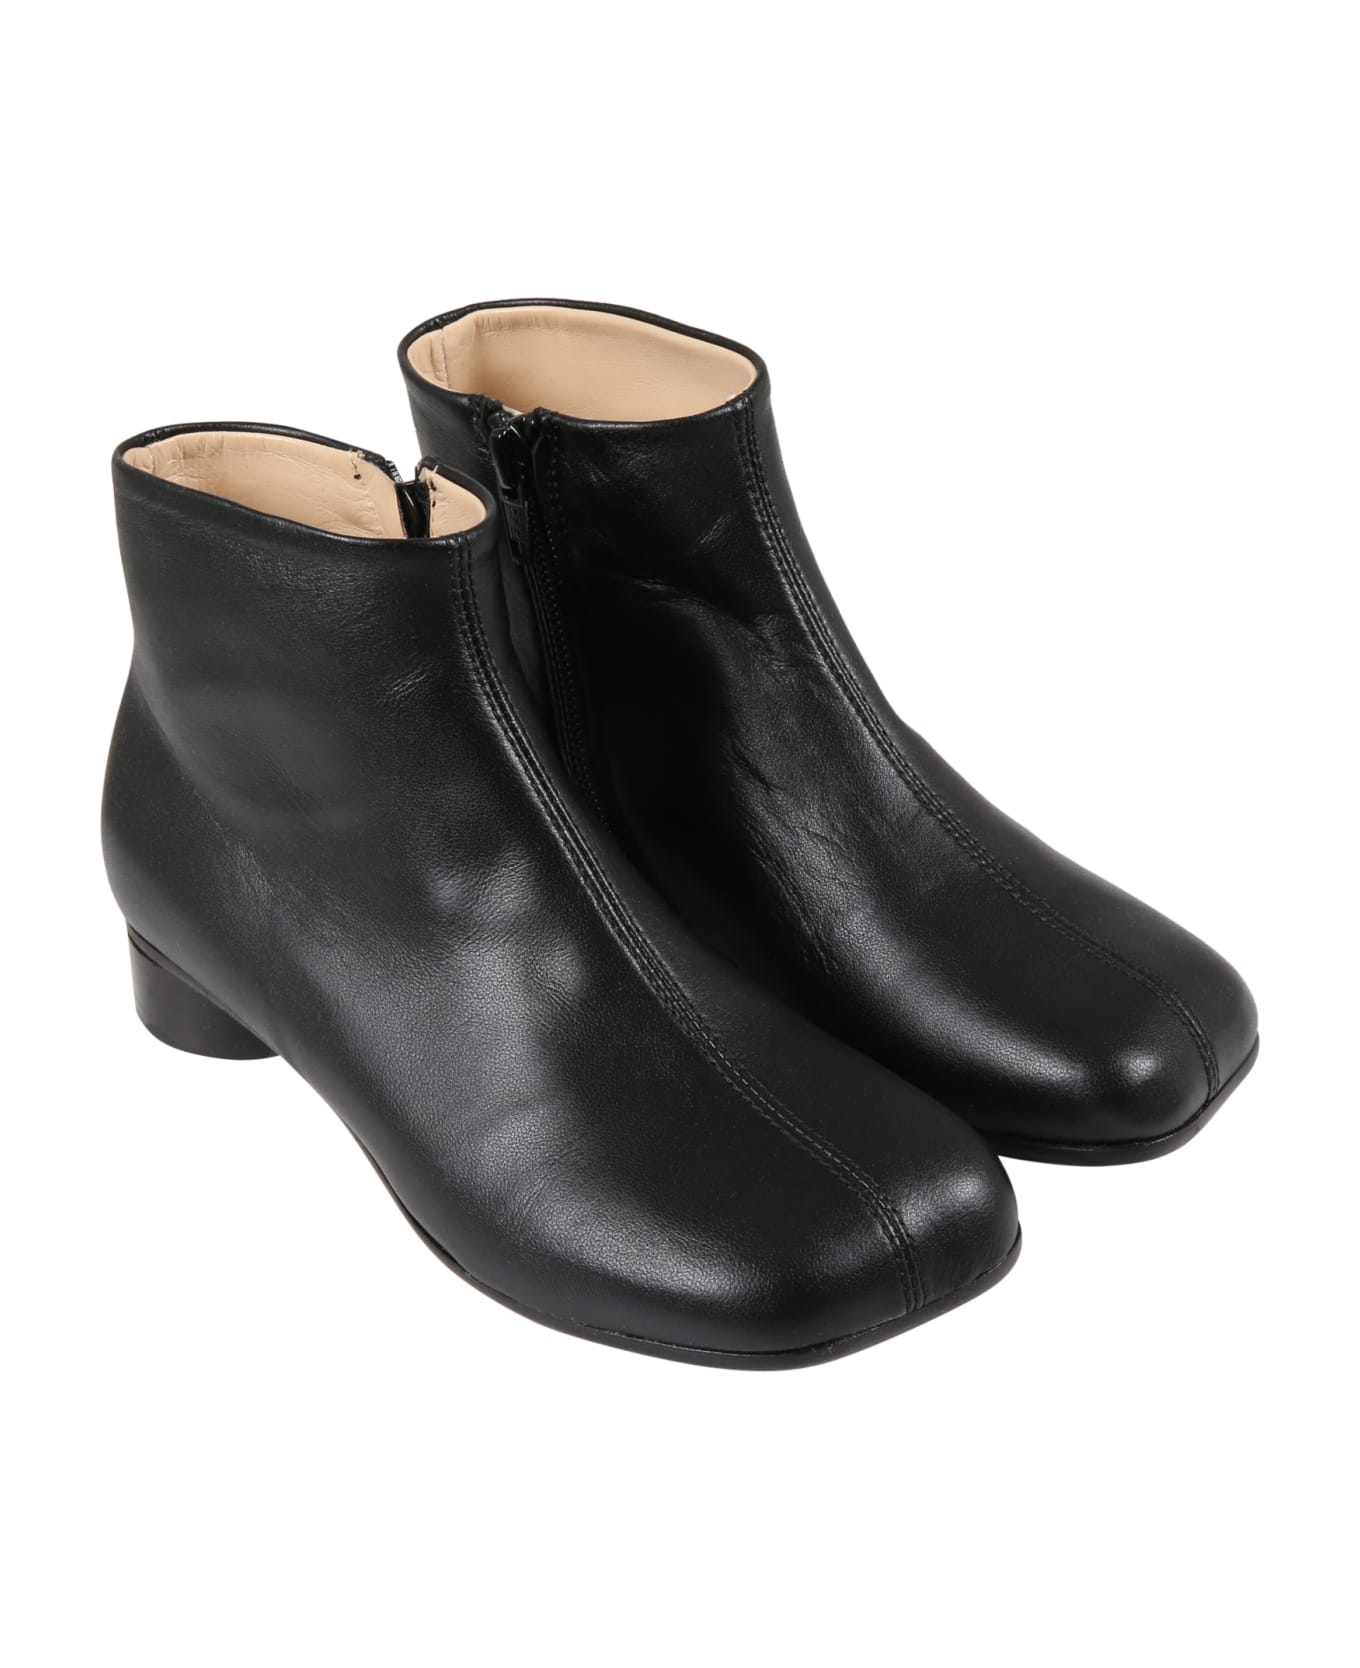 MM6 Maison Margiela Black Boots For Girl - Black